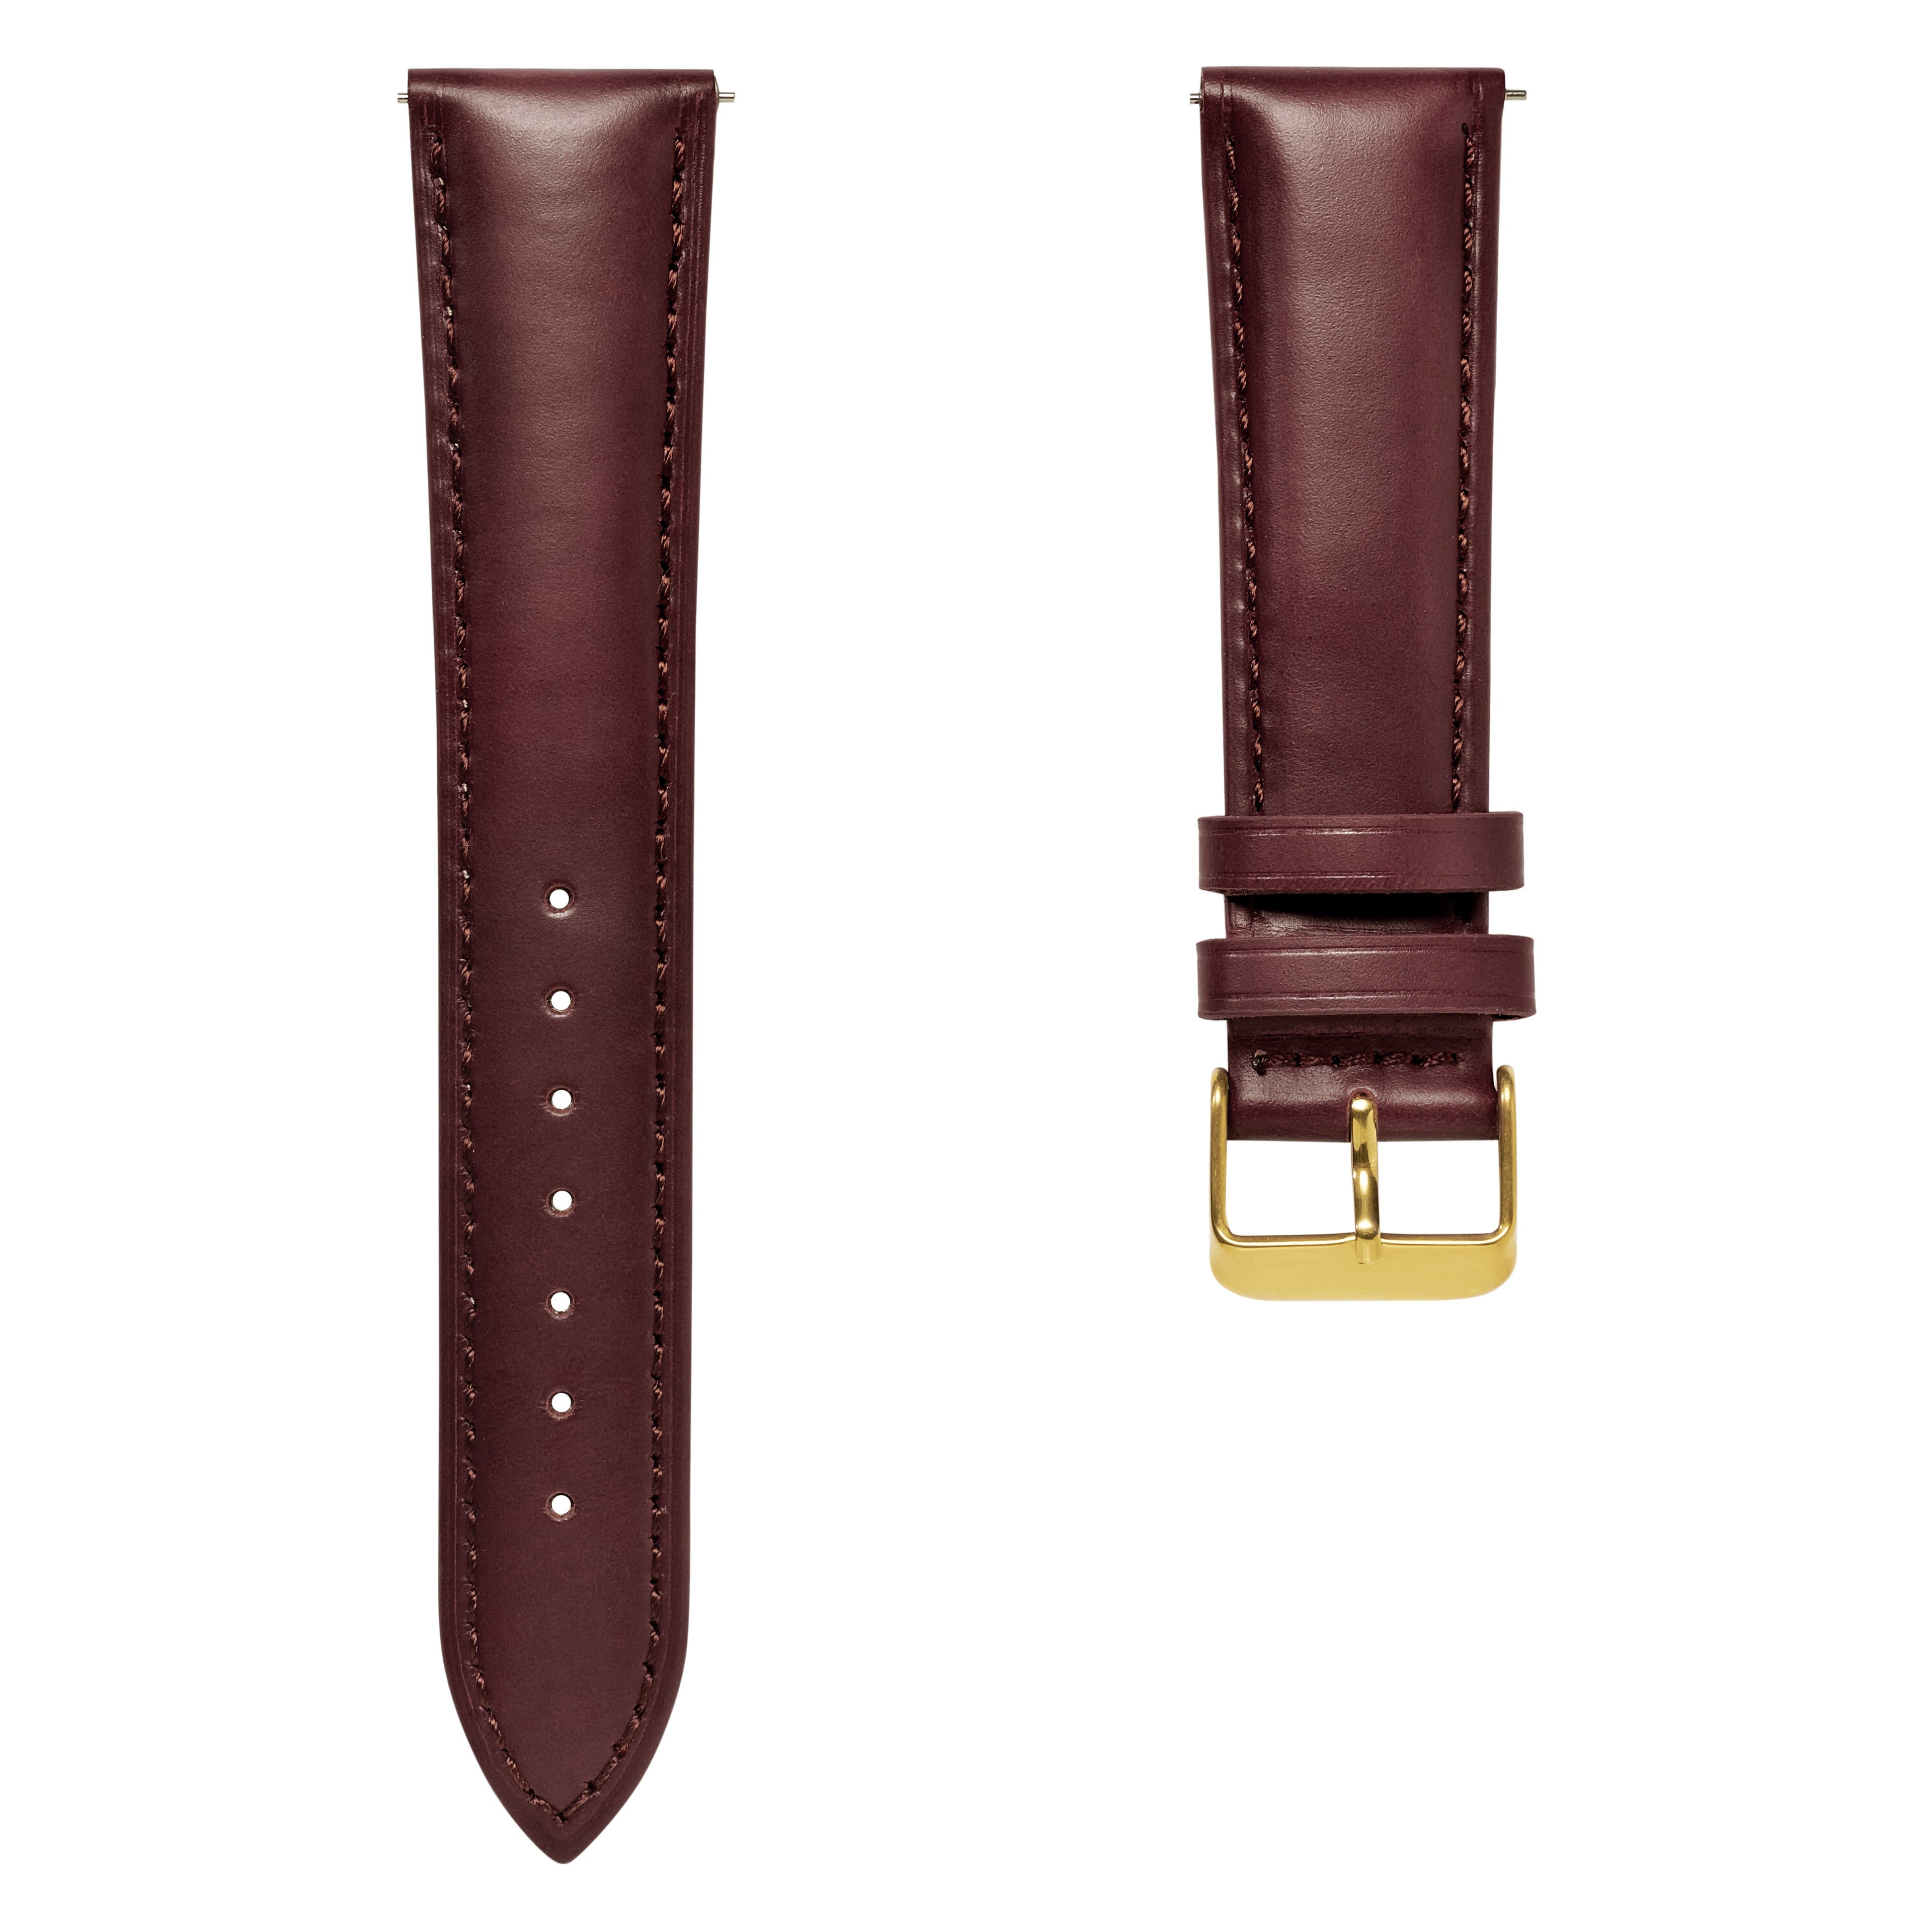 Bracelet de montre en cuir marron foncé  avec boucle dorée et système de dégagement rapide - 21 mm 